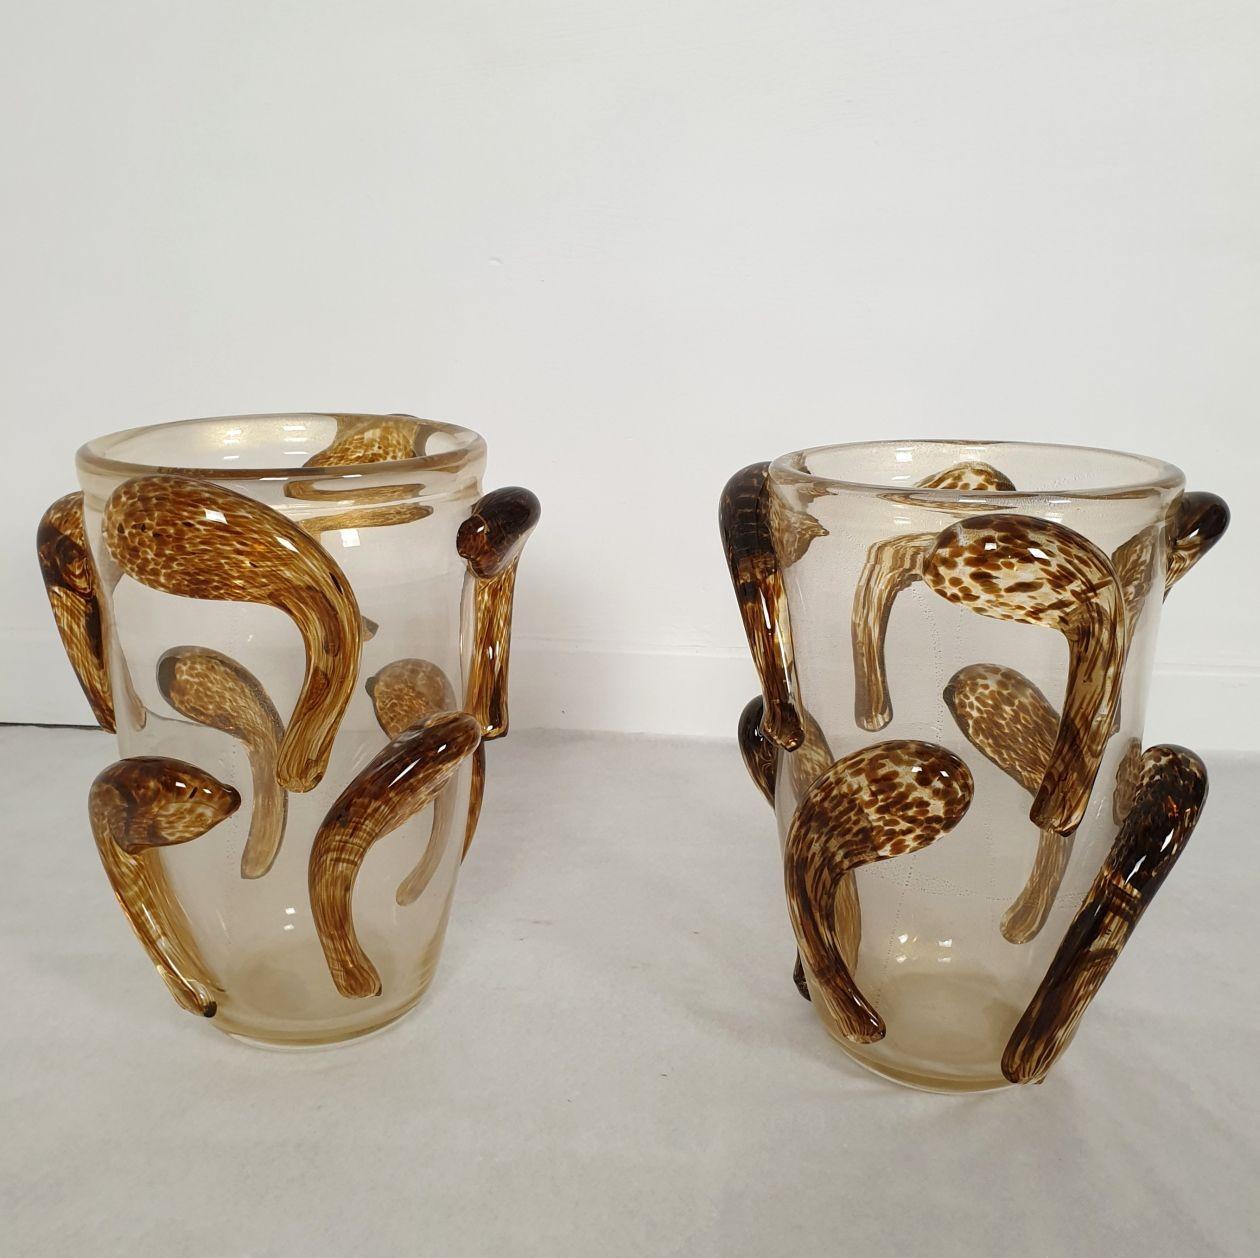 Paar Vasen aus Murano-Glas aus der Mitte des Jahrhunderts, Seguso, Italien, 1980er Jahre.
Das Paar großer Vasen ist handgefertigt - ein klarer Sockel mit dicken braunen und goldenen Braunglasdekorationen.
Die unregelmäßigen Ornamente haben eine Art